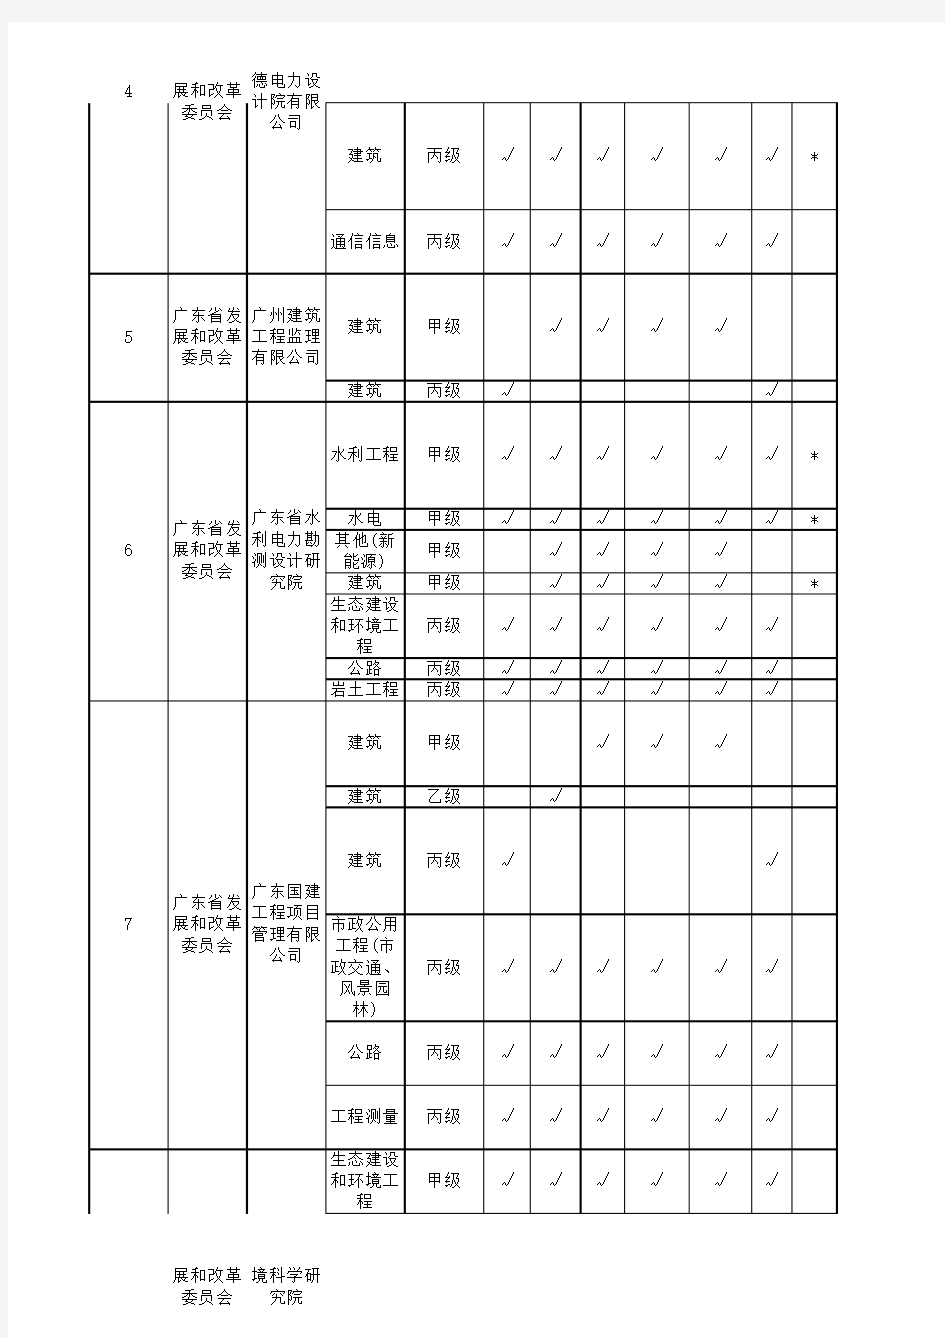 2013年广东省工程咨询单位资格名单